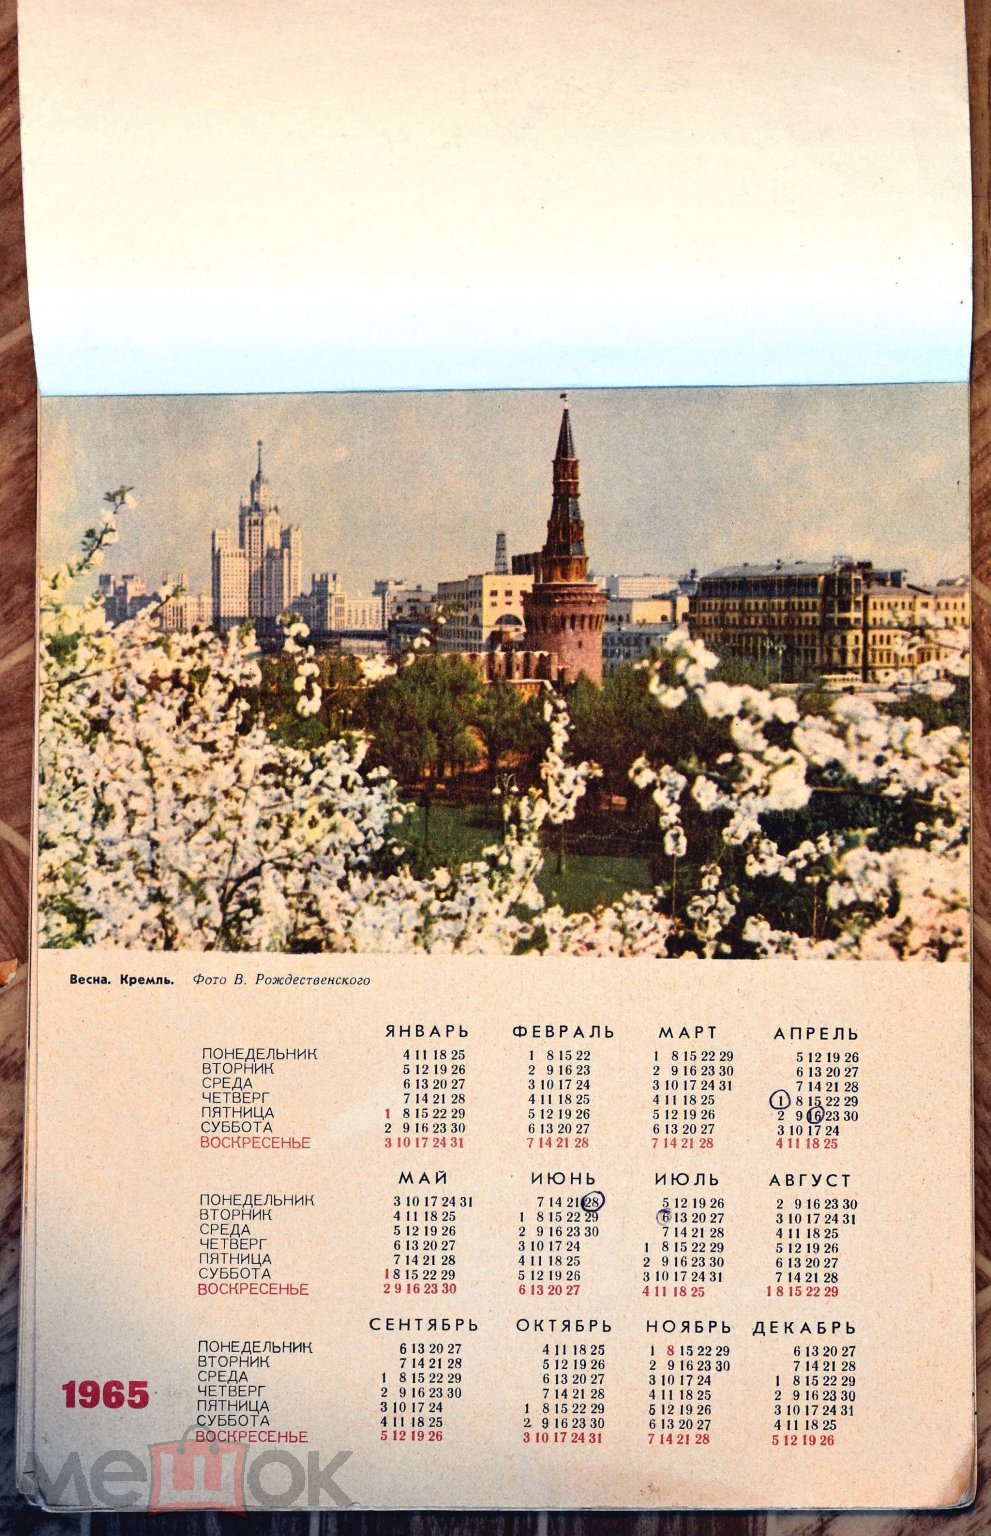 Молодёжный календарь на 1965 год. 1964 год, СССР (торги завершены  #258114457)